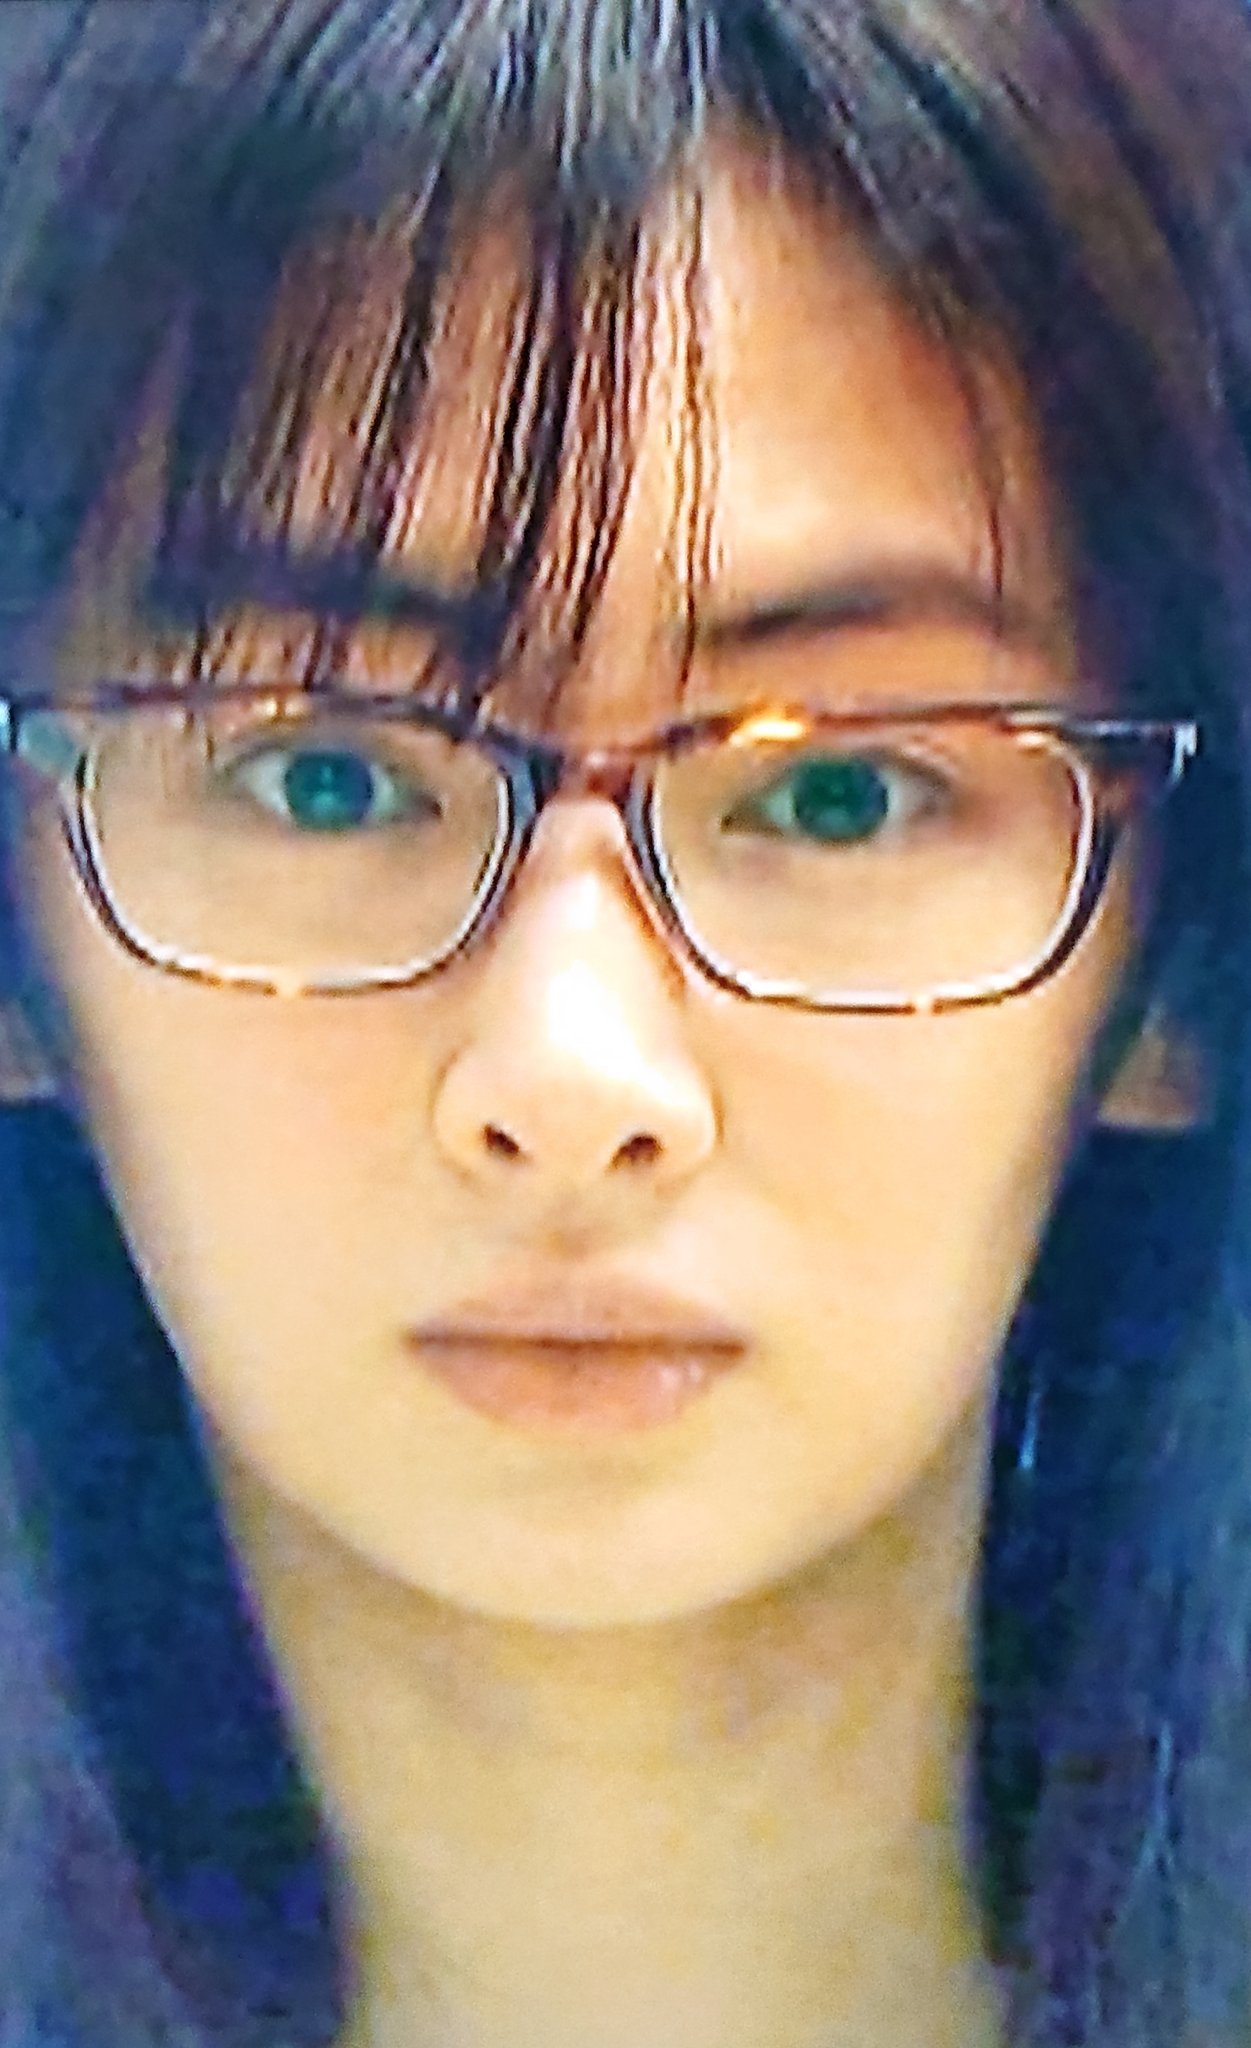 An ドラマ リコカツ での北川景子さんのスッピンメガネ姿綺麗ですね とてもお似合いですね T Co mjdiqltn Twitter